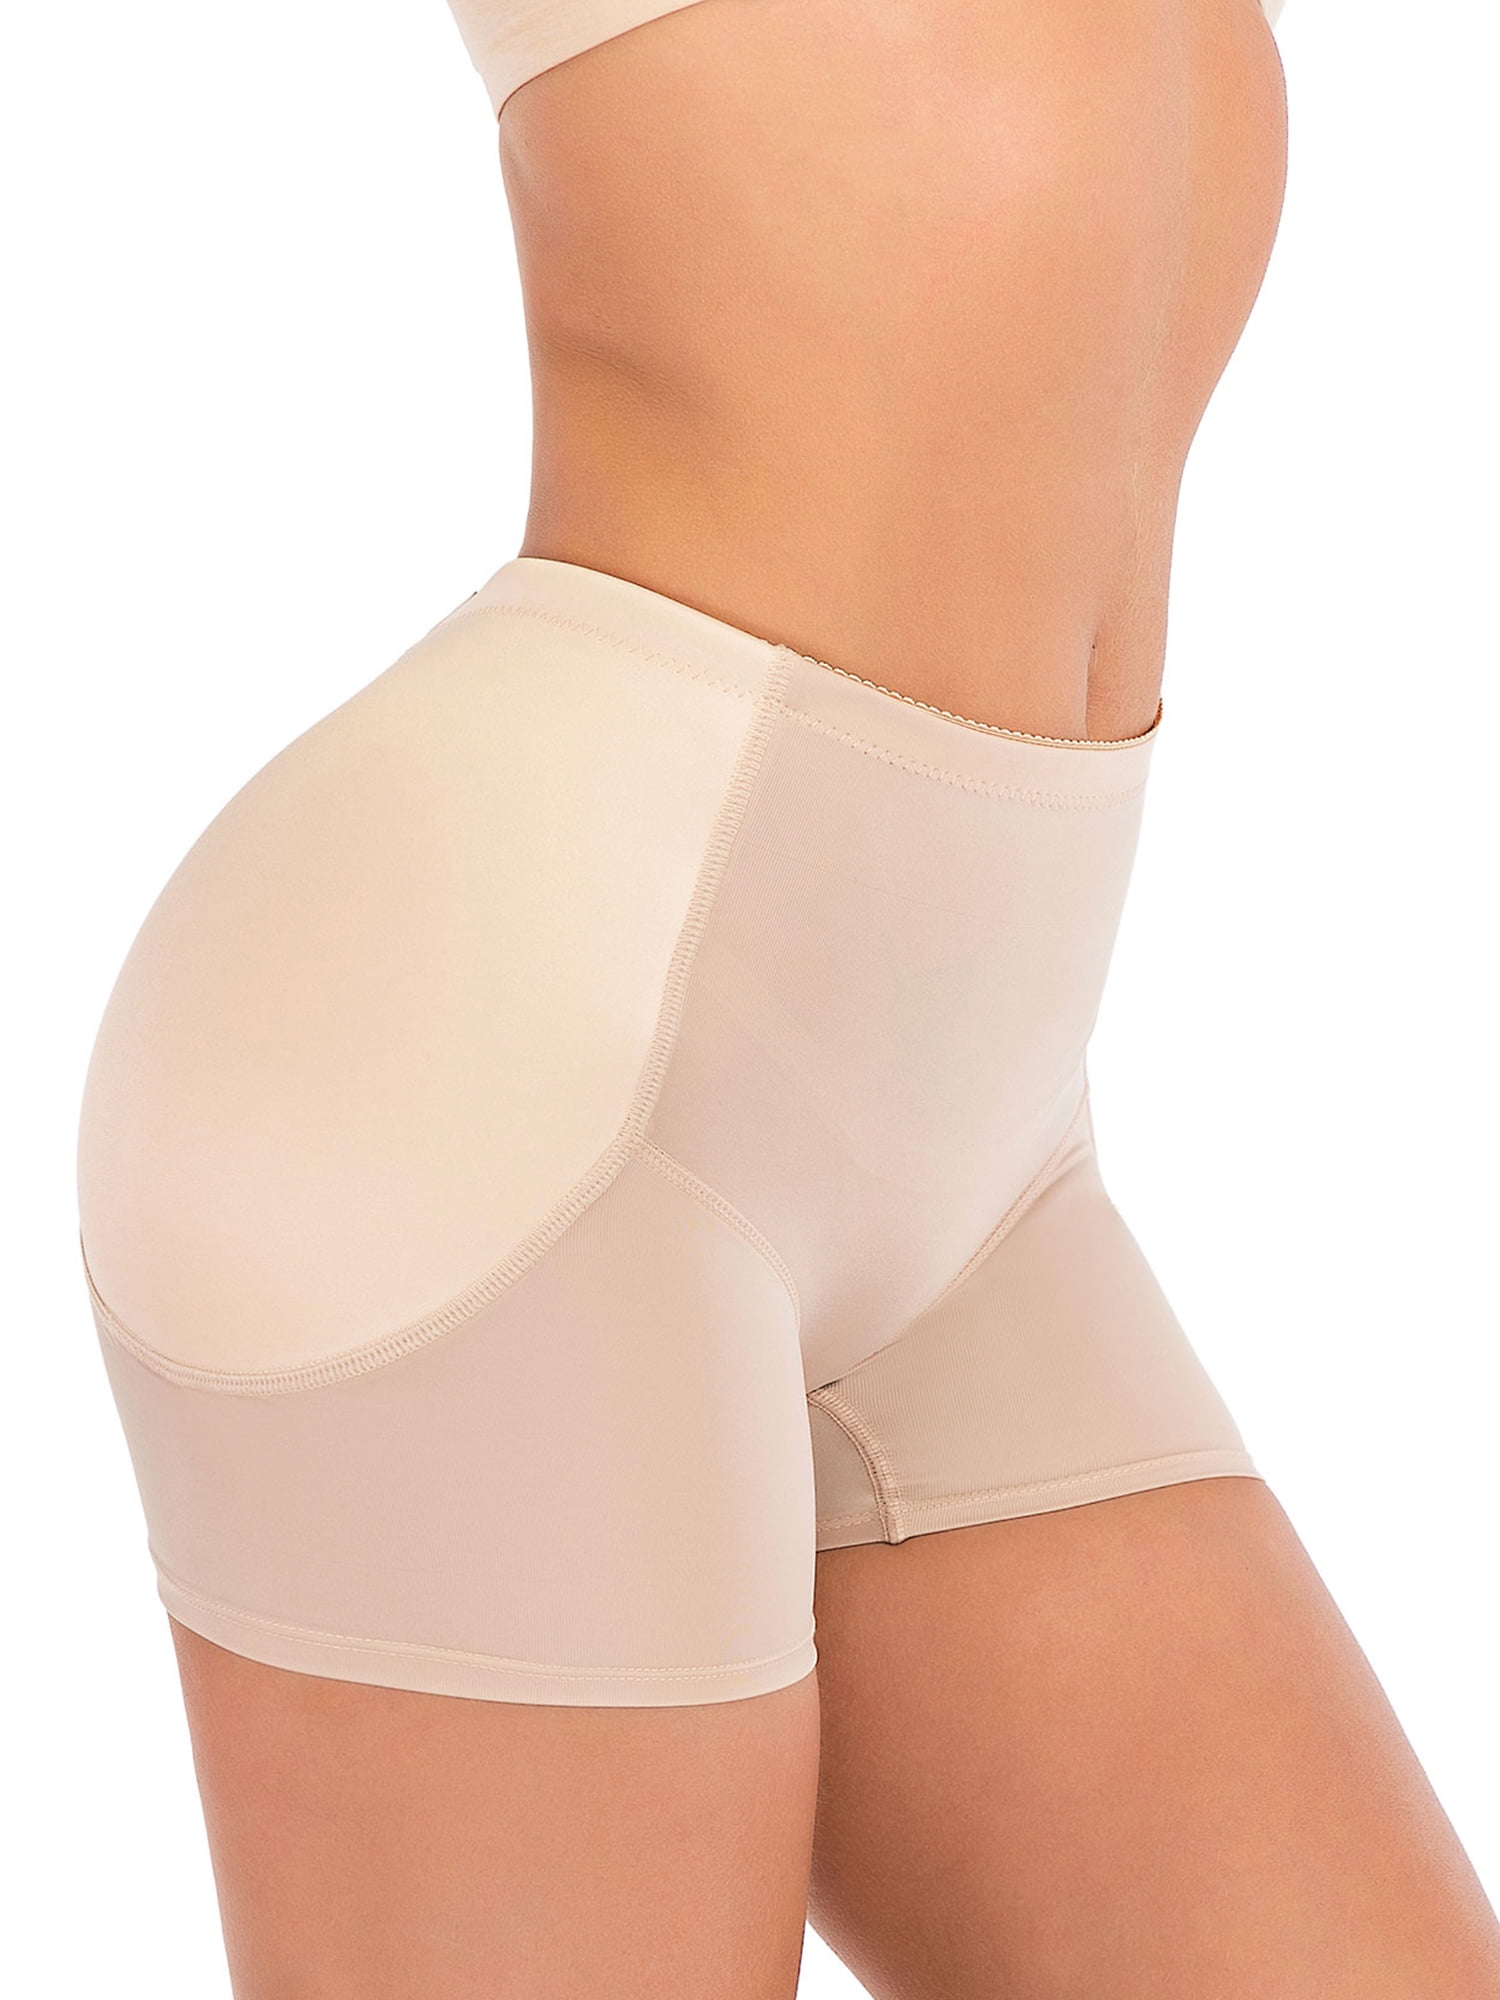 FOCUSSEXY Women Hip Enhancer Shapewear Padded Panties Butt Lifter Hip  Enhancer Body Shaper Slimming Butt Hip Pads Sexy Panty Control Panties  Shaper 